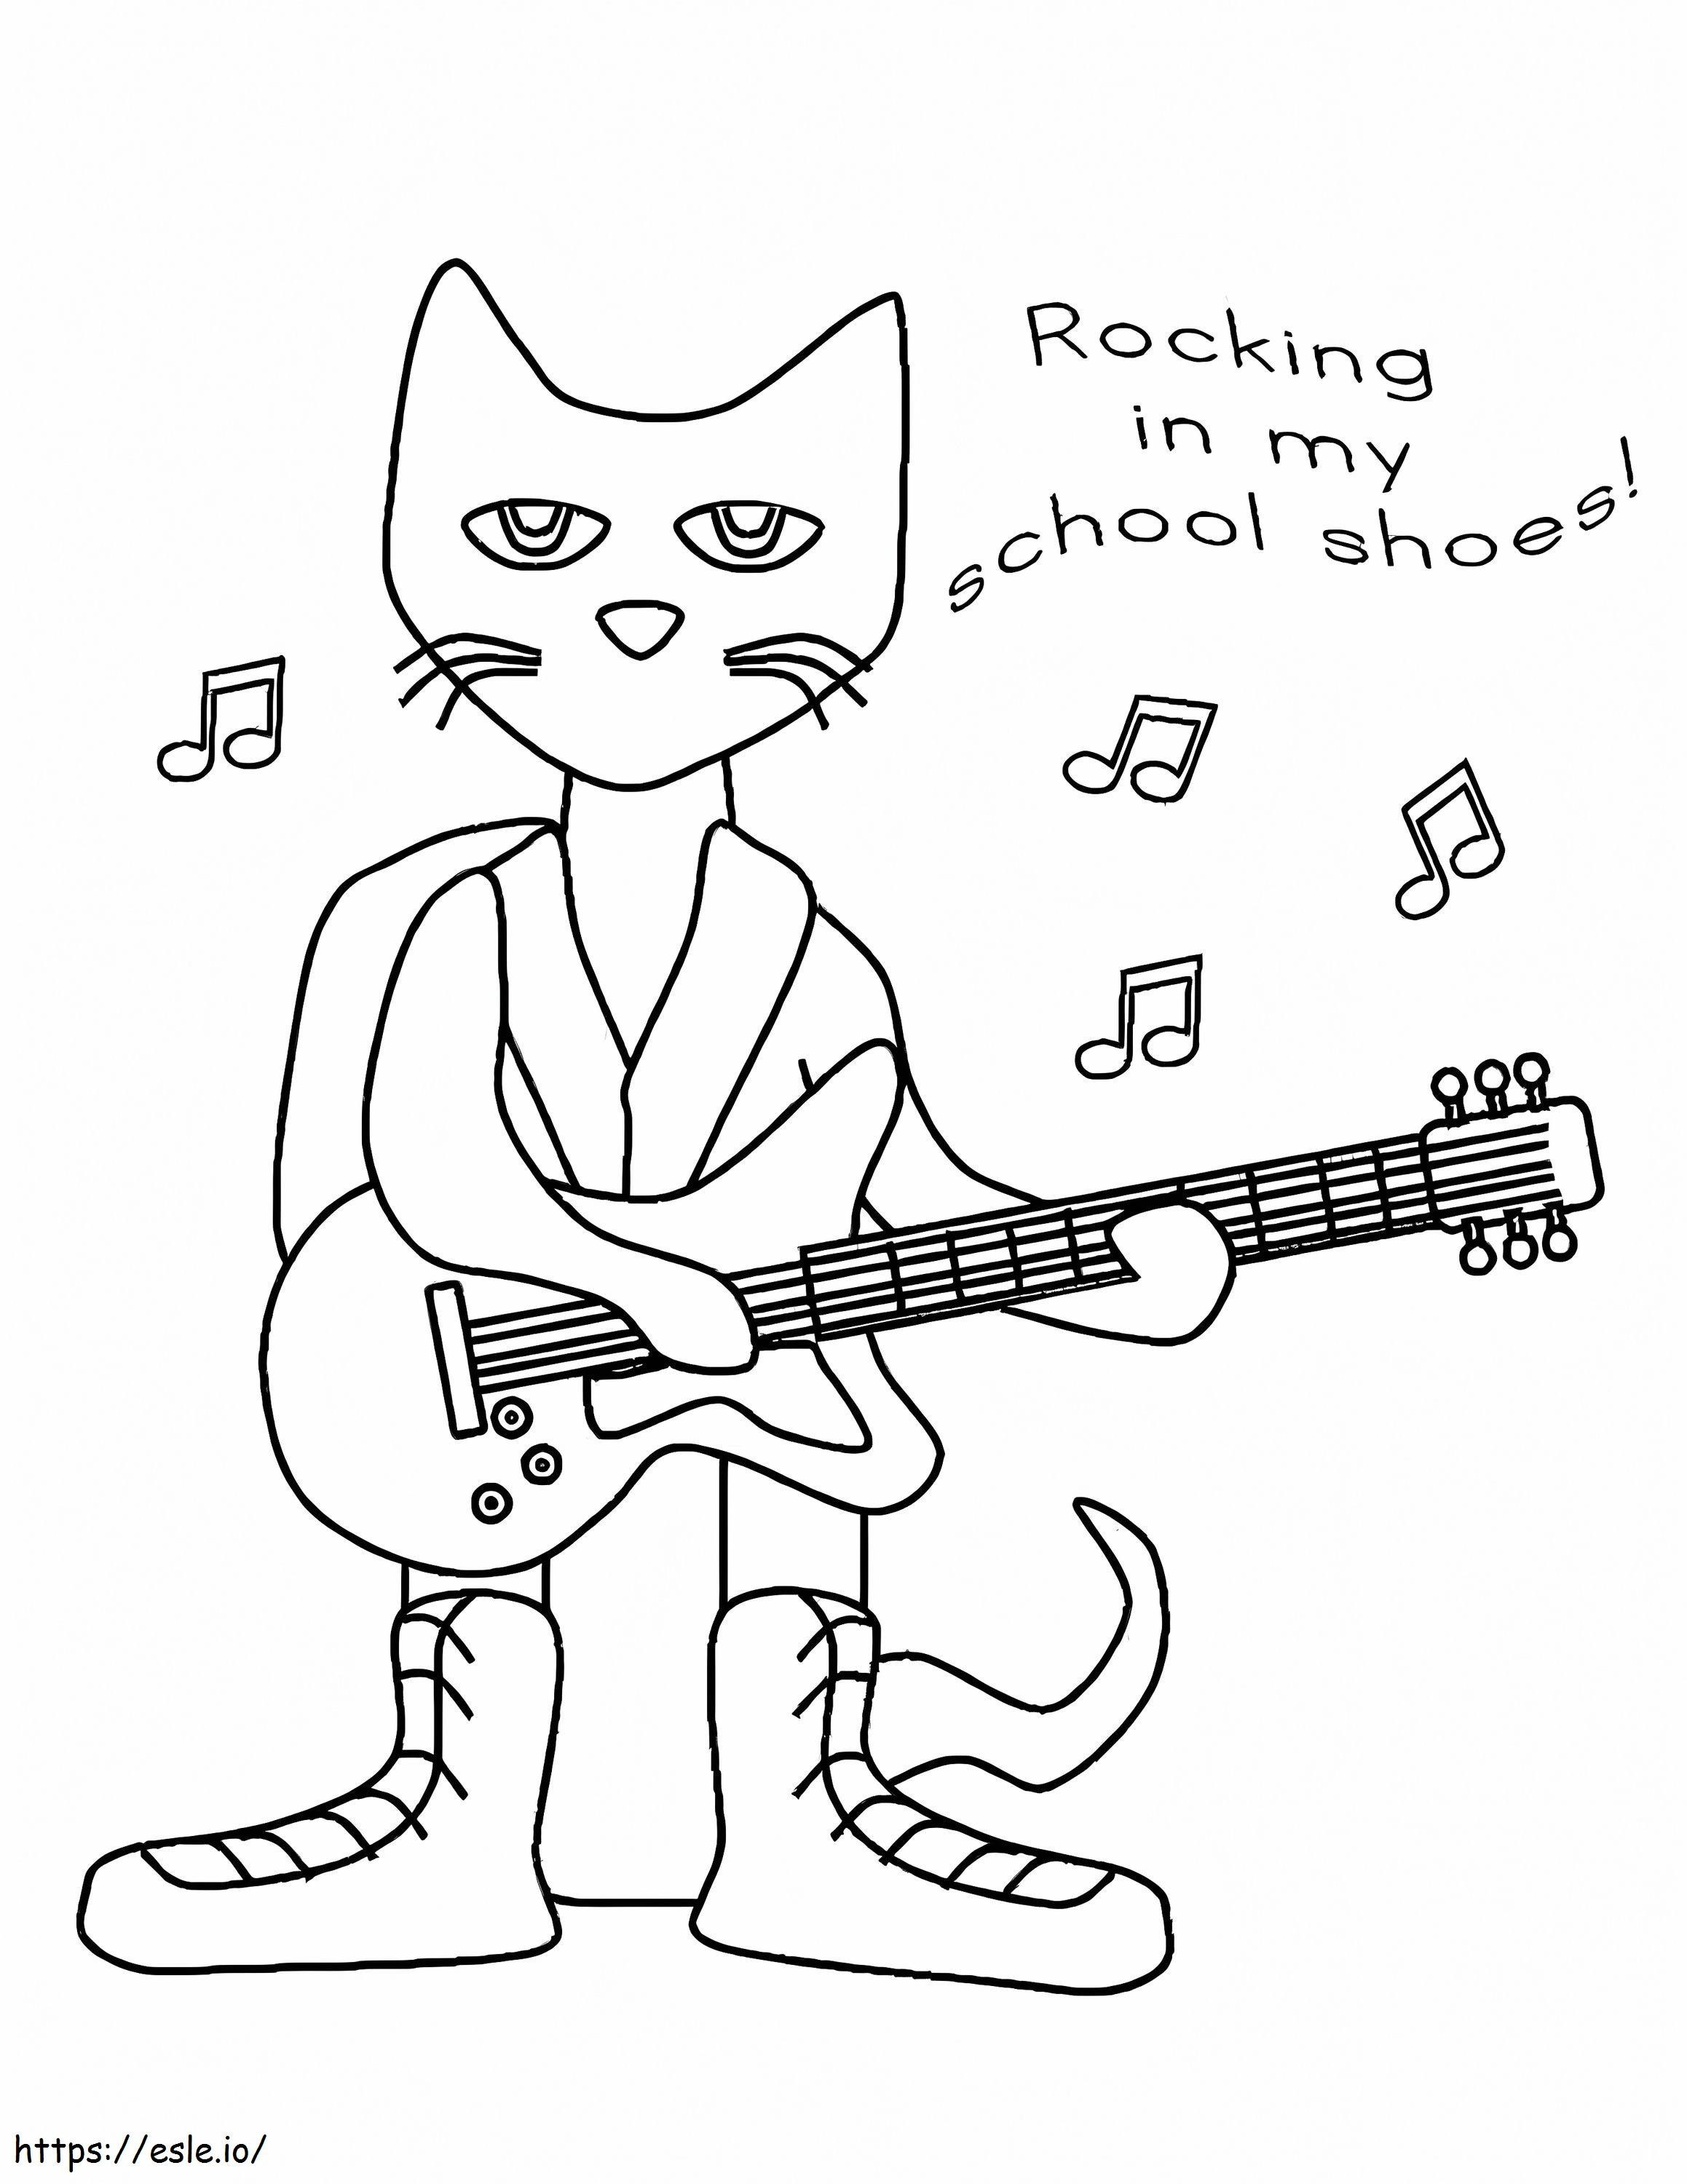 Pete The Cat gra na gitarze i śpiewa kolorowanka